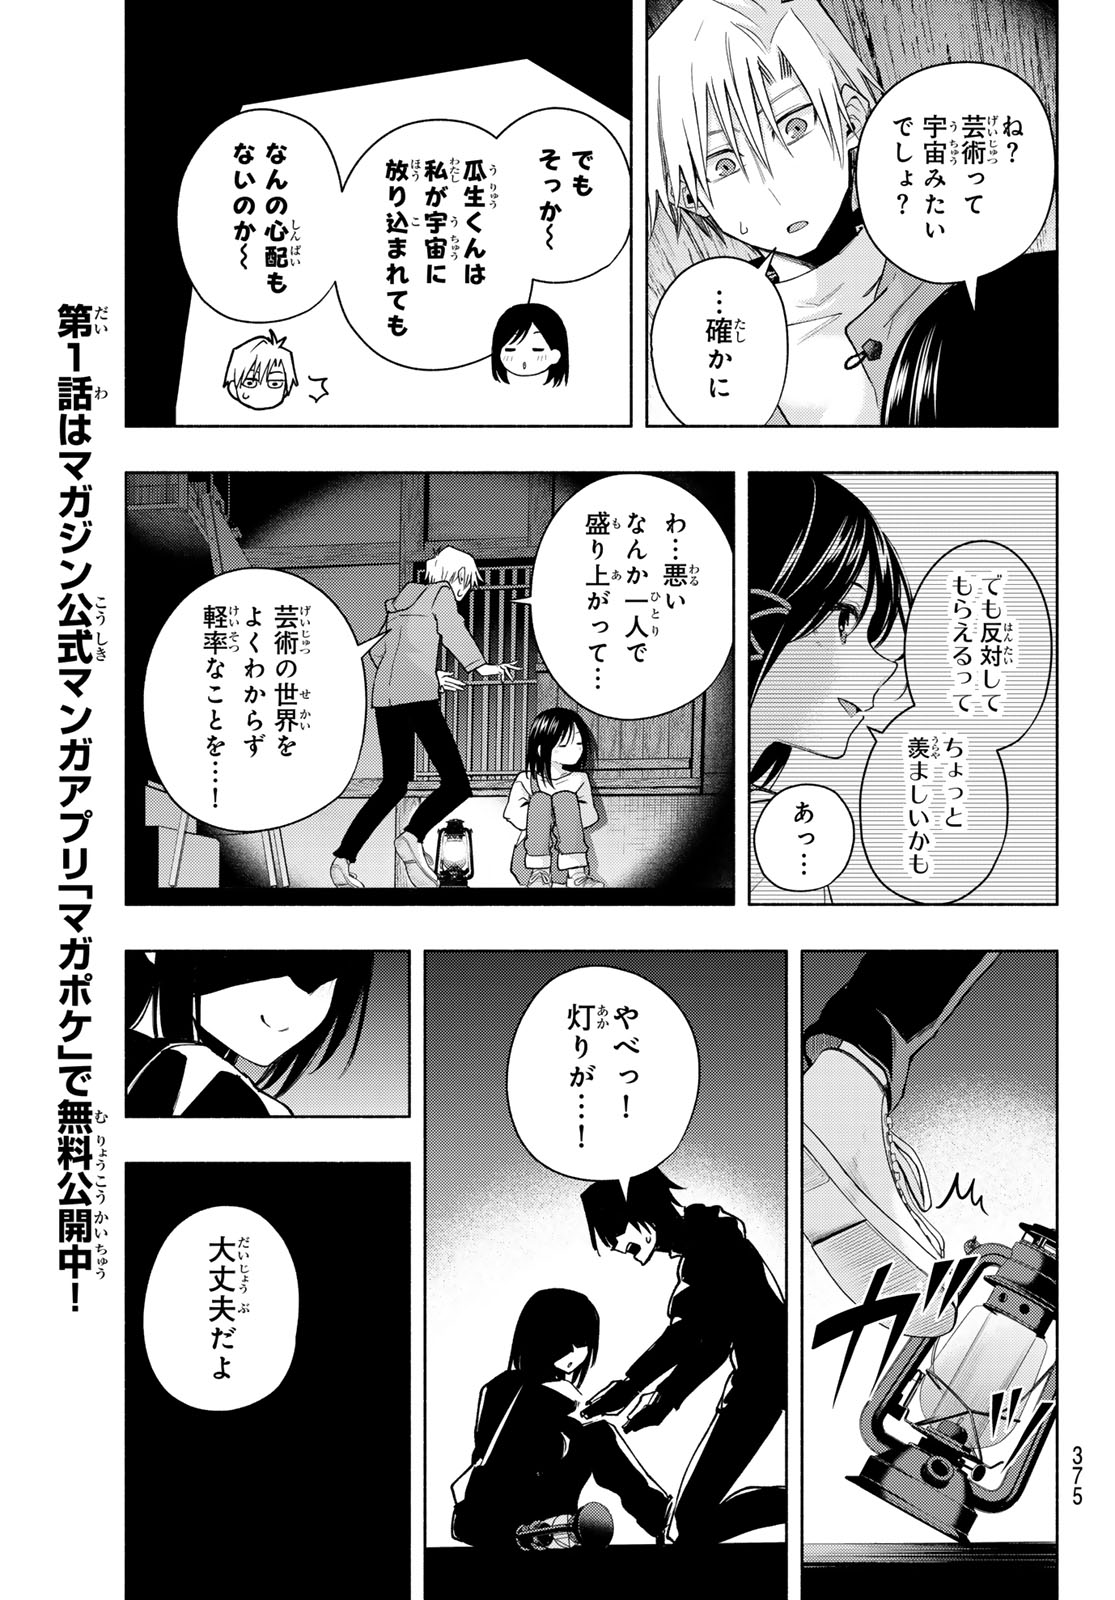 Amagami-san Chi no Enmusubi - Chapter 139 - Page 17